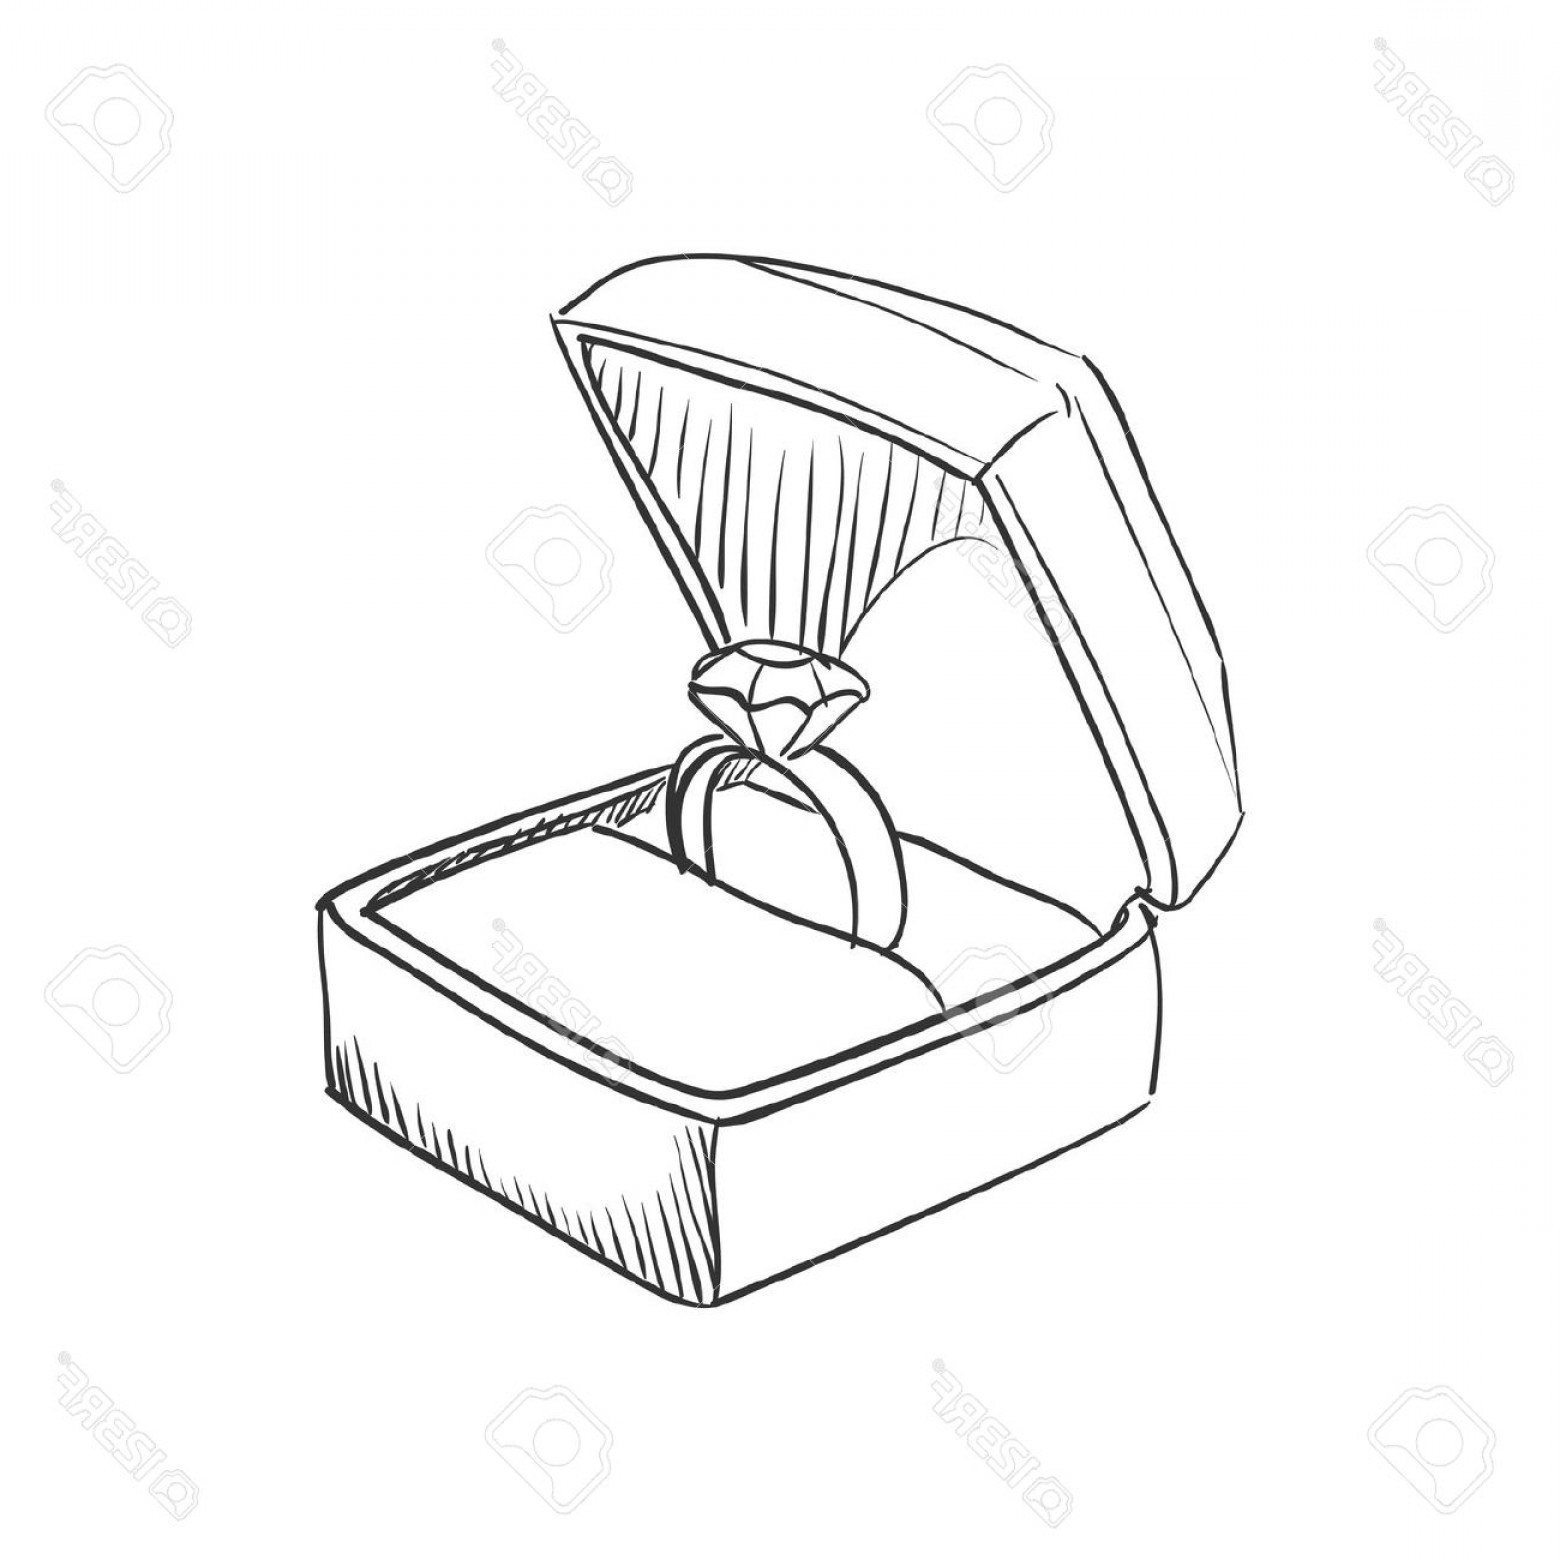 Interlocking Wedding Rings Drawing at